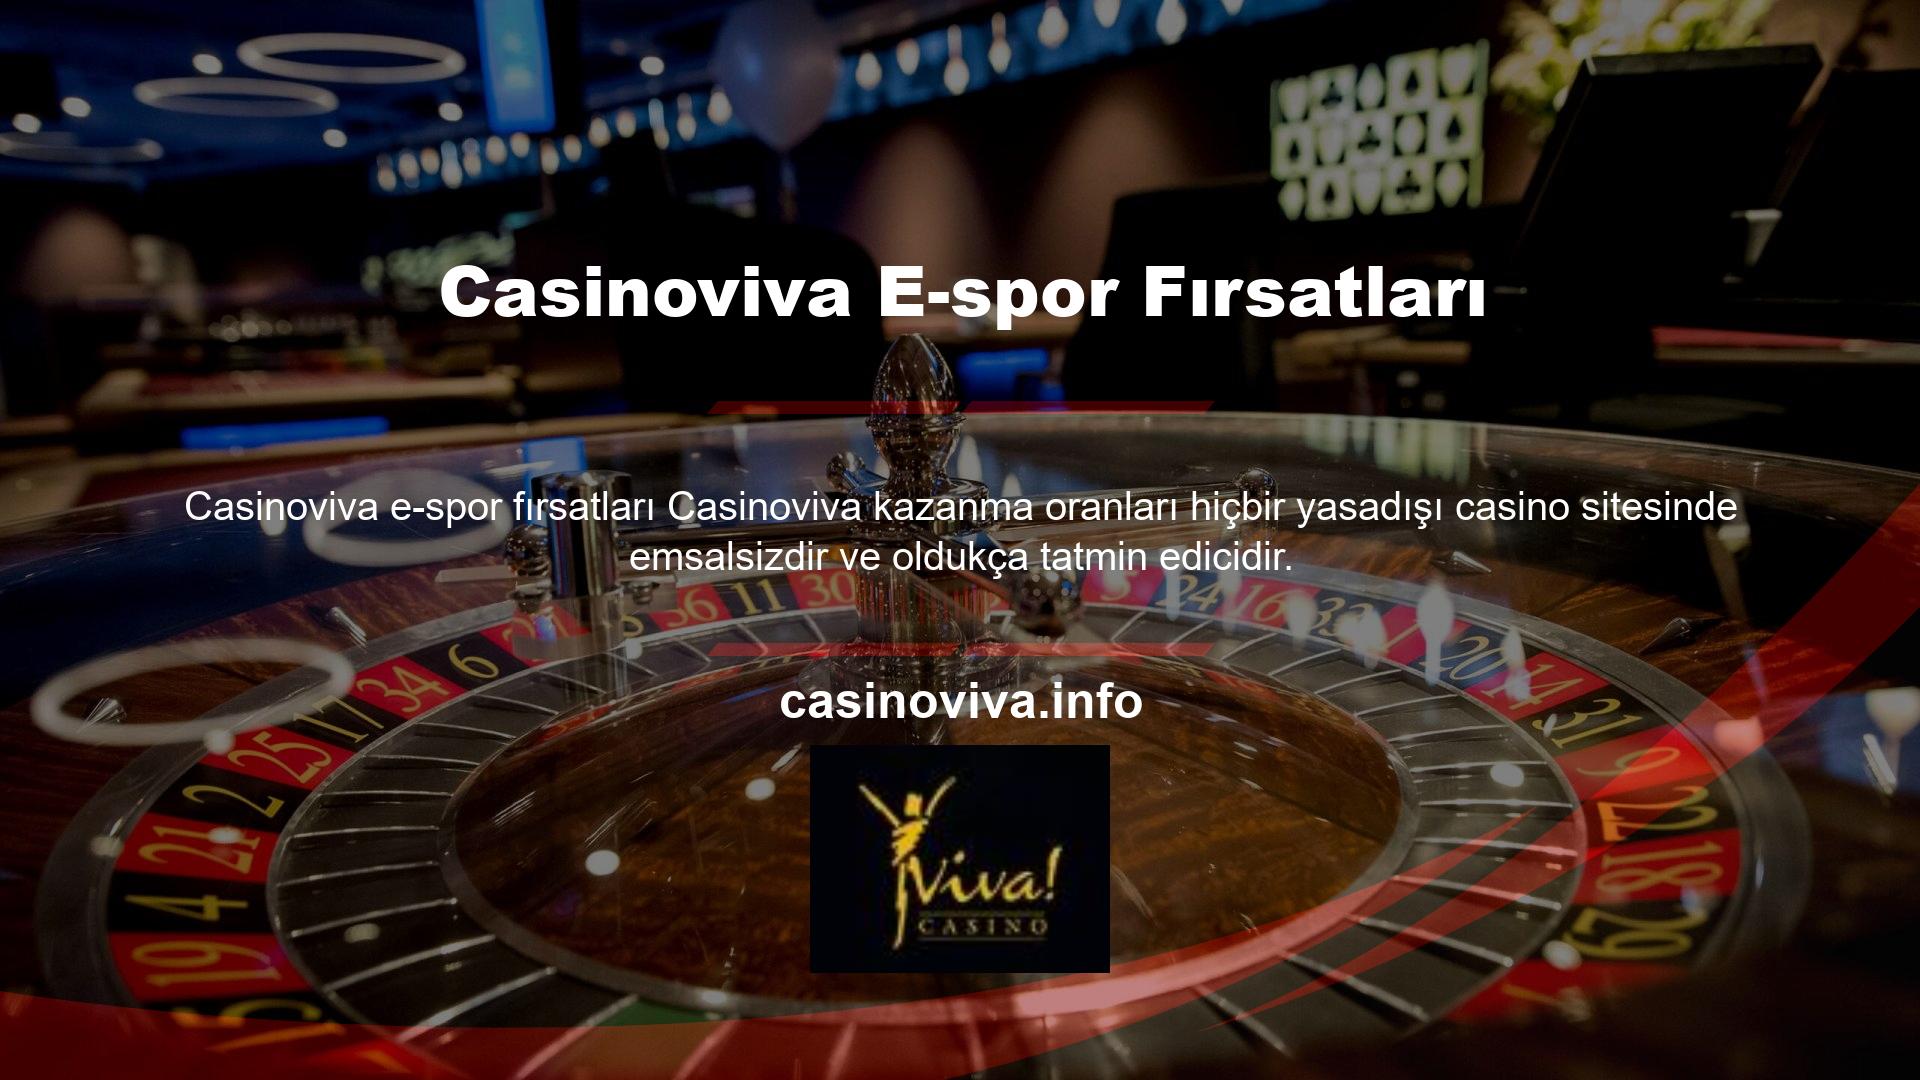 Casinoviva e-spor fırsatları